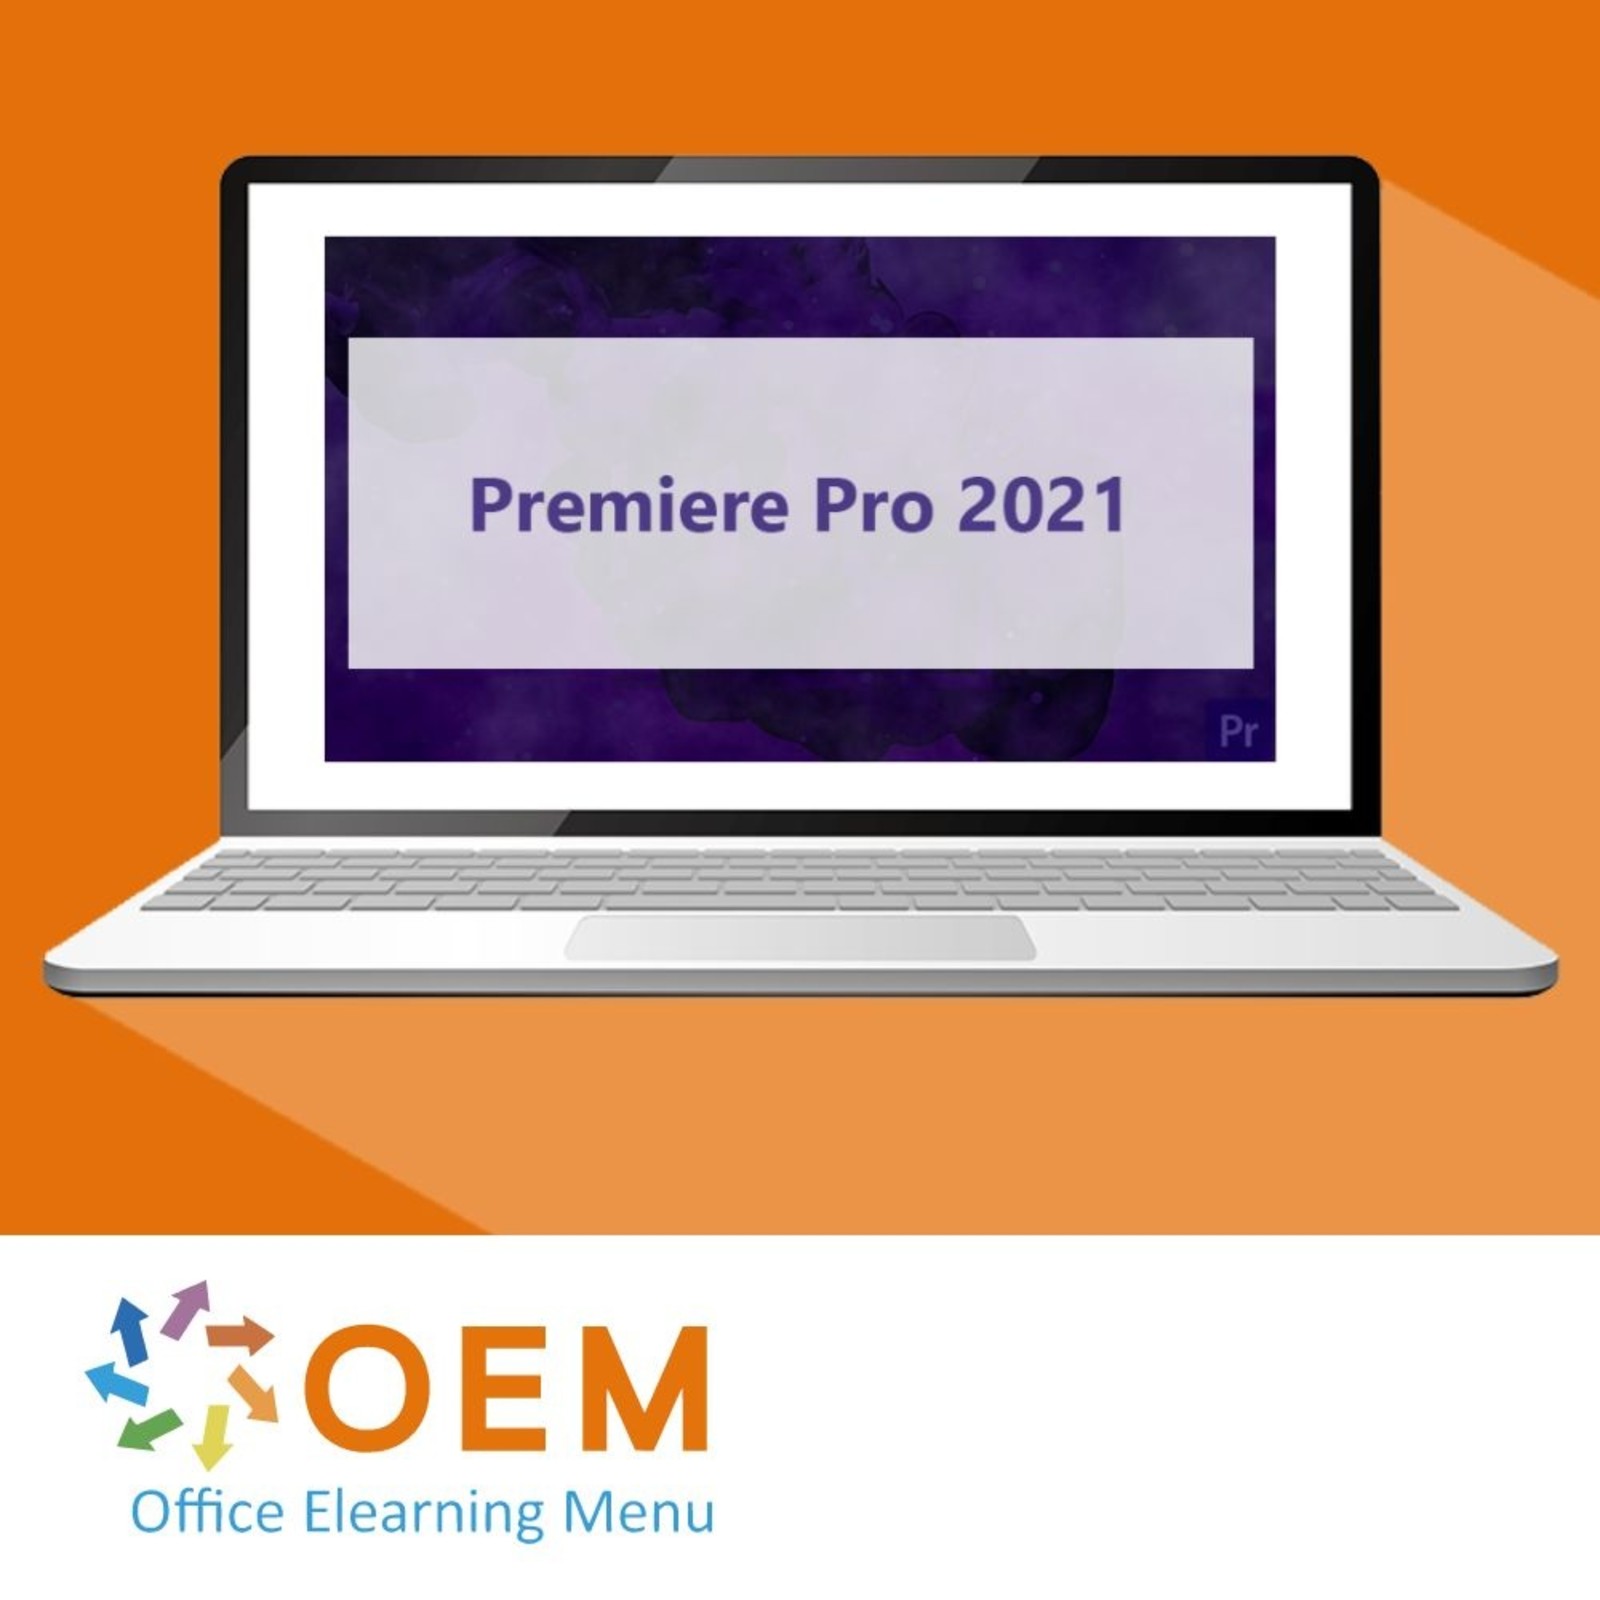 Adobe Adobe Premiere Pro CC 2021 Course E-Learning